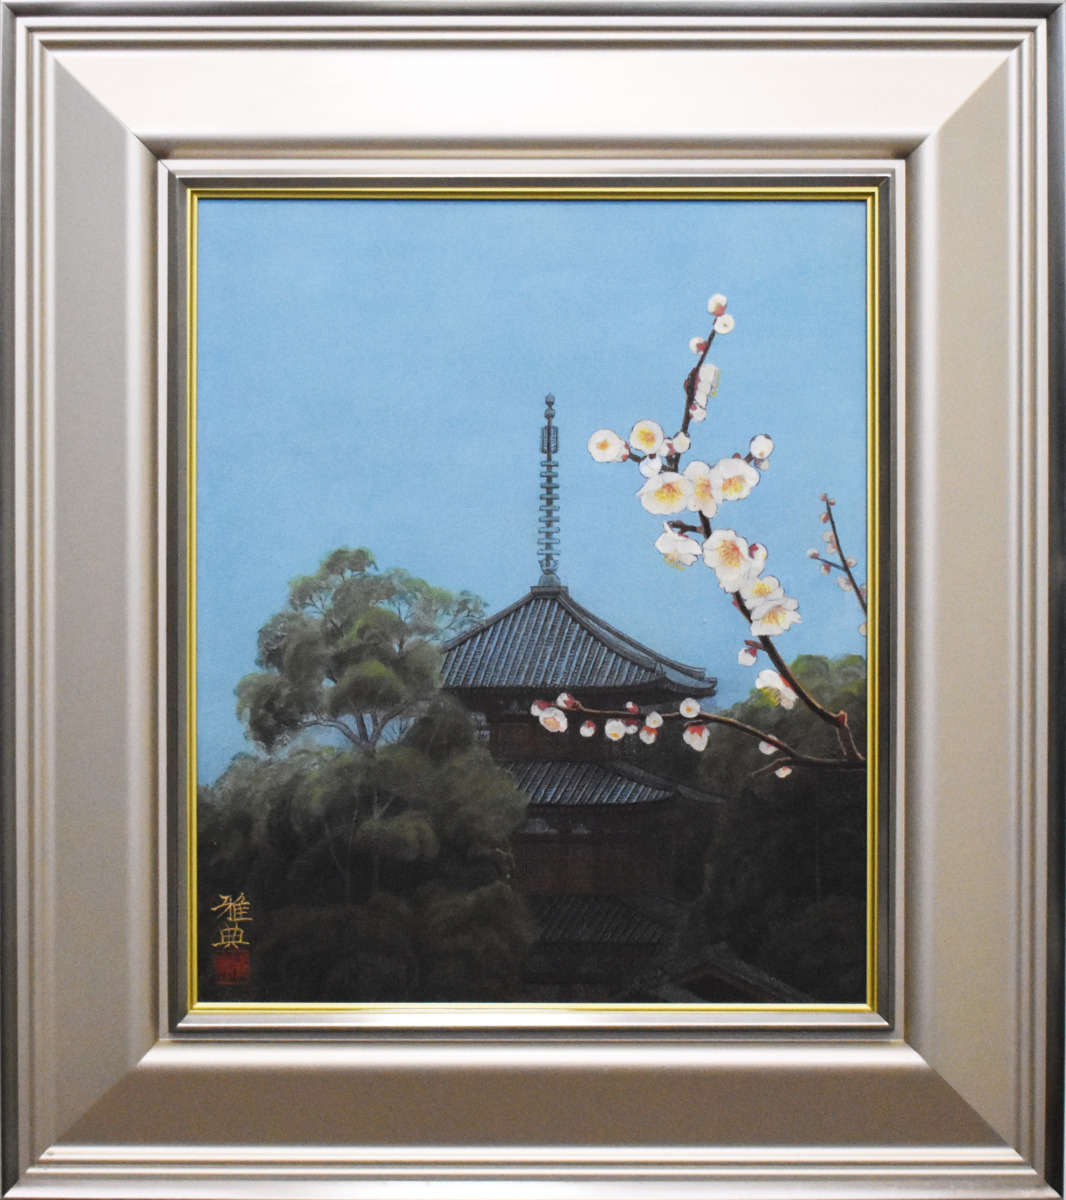 [Galería Masamitsu / 5000 artículos en exhibición] Obra rara encontrada en la pintura japonesa Masanori Shinoda Ikaruga a principios de la primavera 8F, cuadro, pintura japonesa, paisaje, Fugetsu